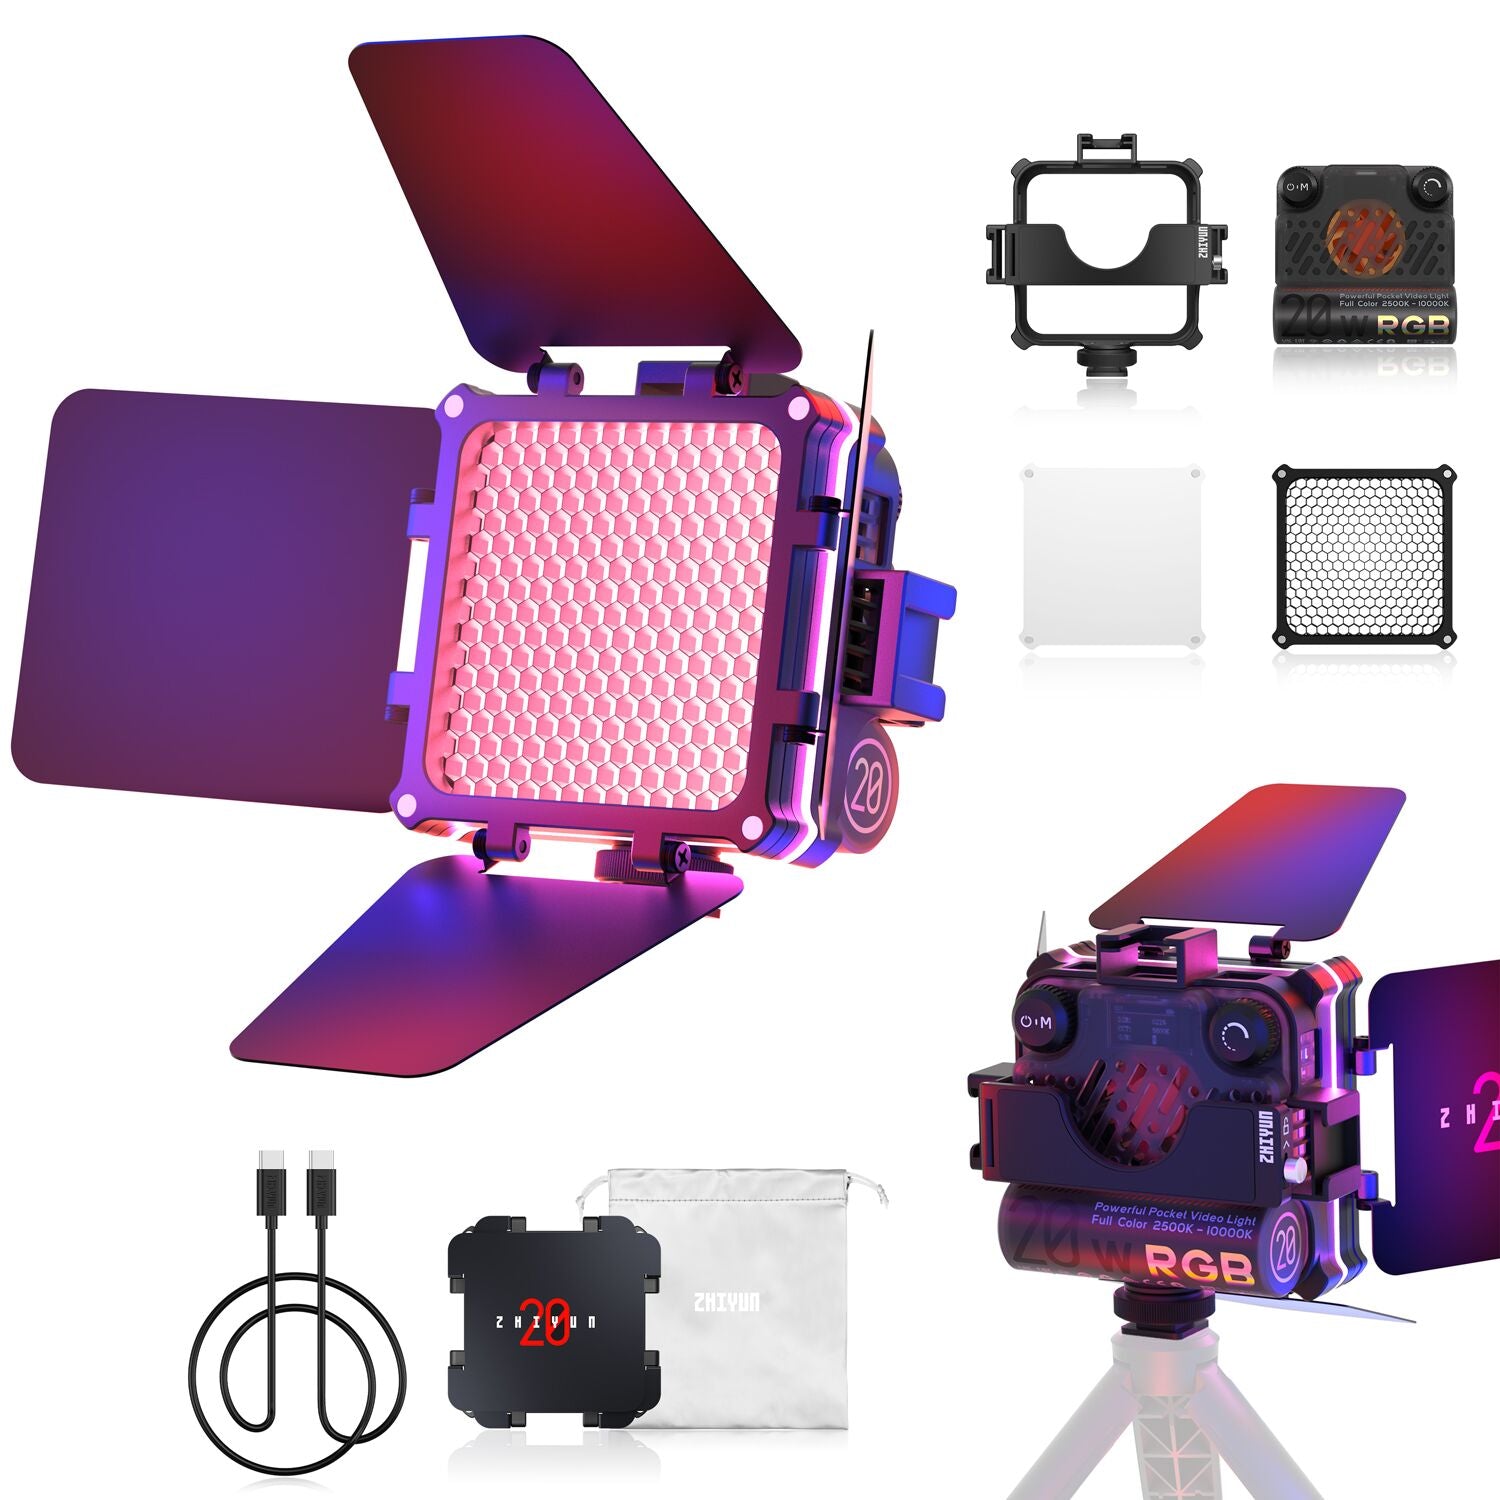 Zhiyun M20C 20W RGB Mini Pocket Fill Light LED Video On Camera